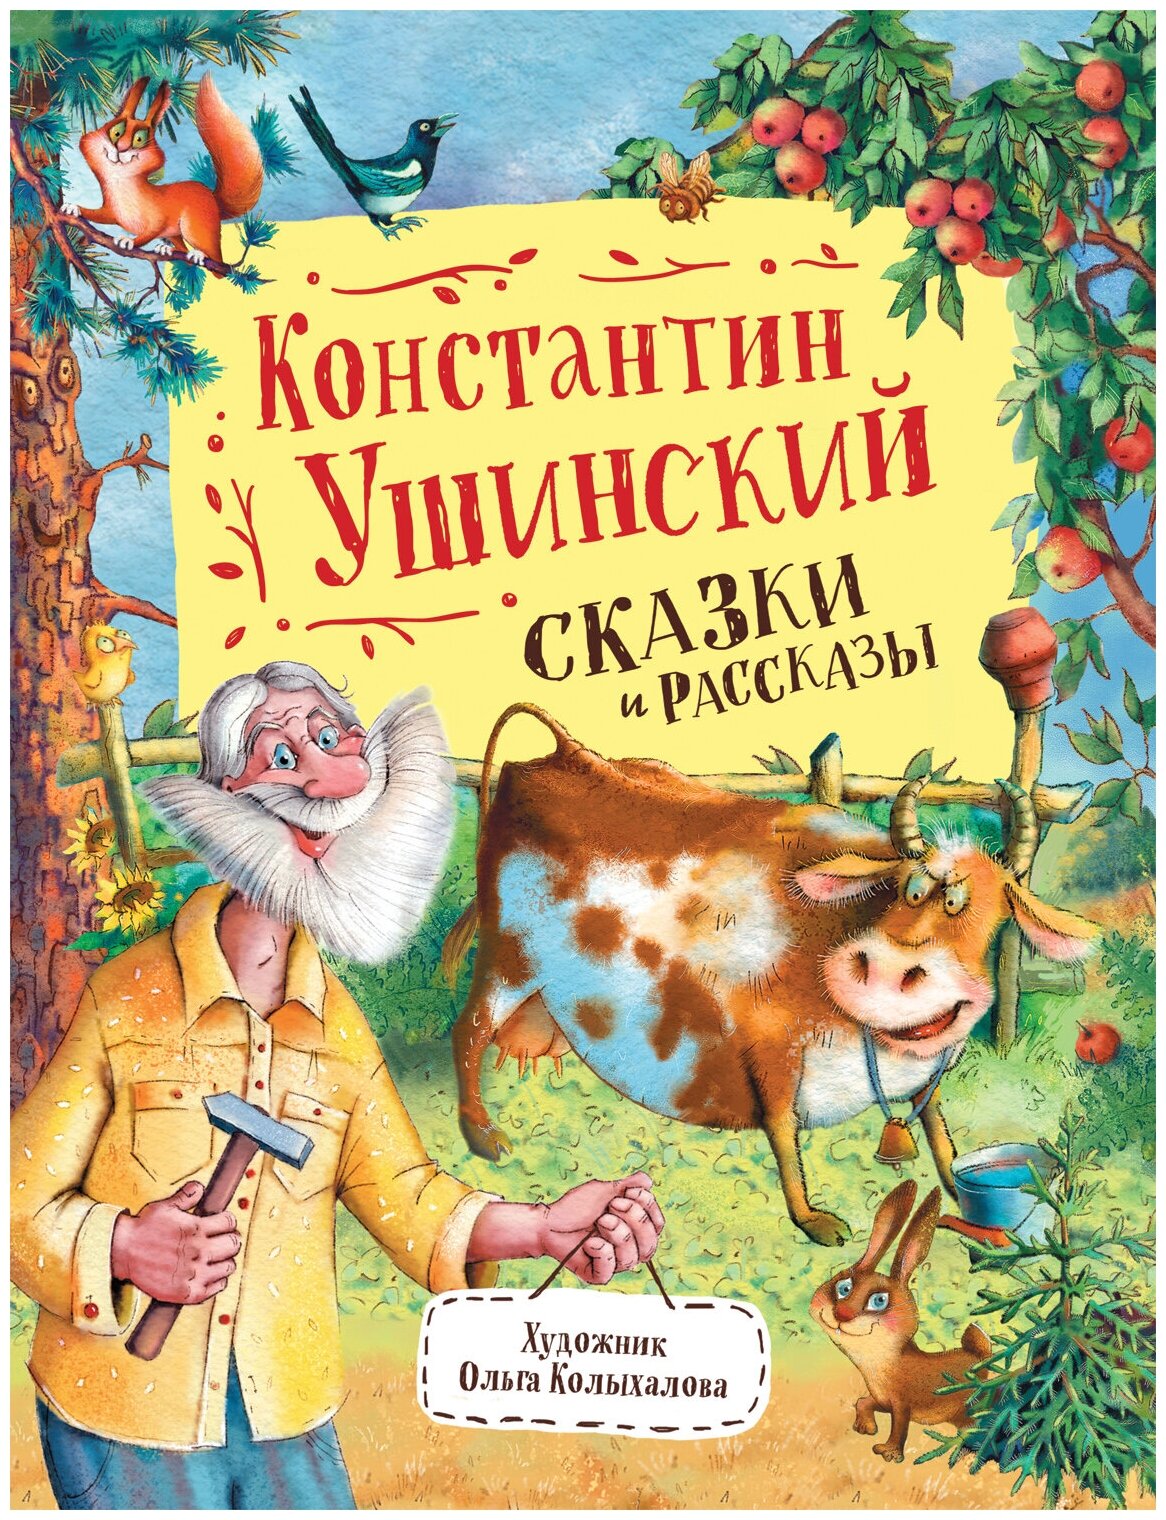 Ушинский К. Сказки и рассказы Любимые детские писатели